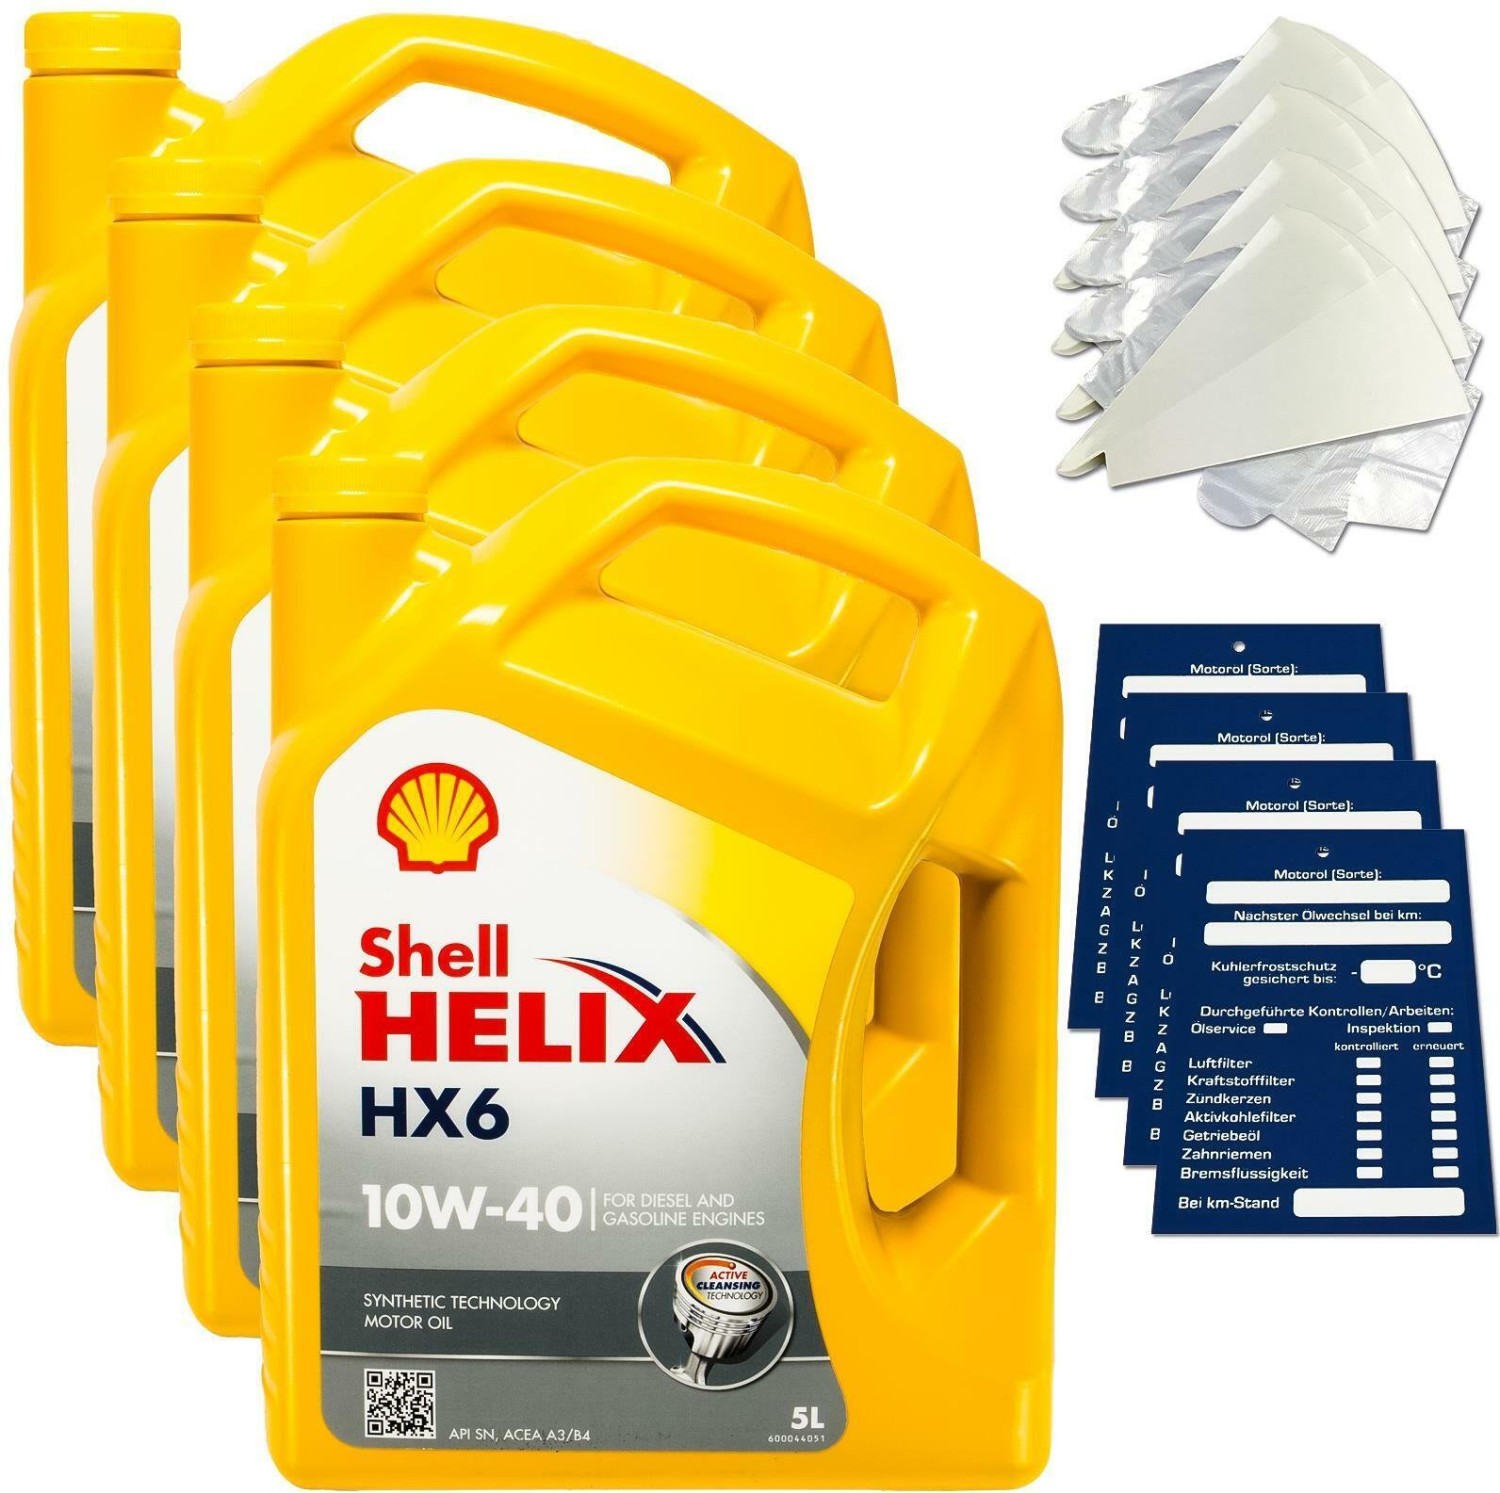 ‎Shell Shell Helix HX6 10W40 Motoröl, 5L